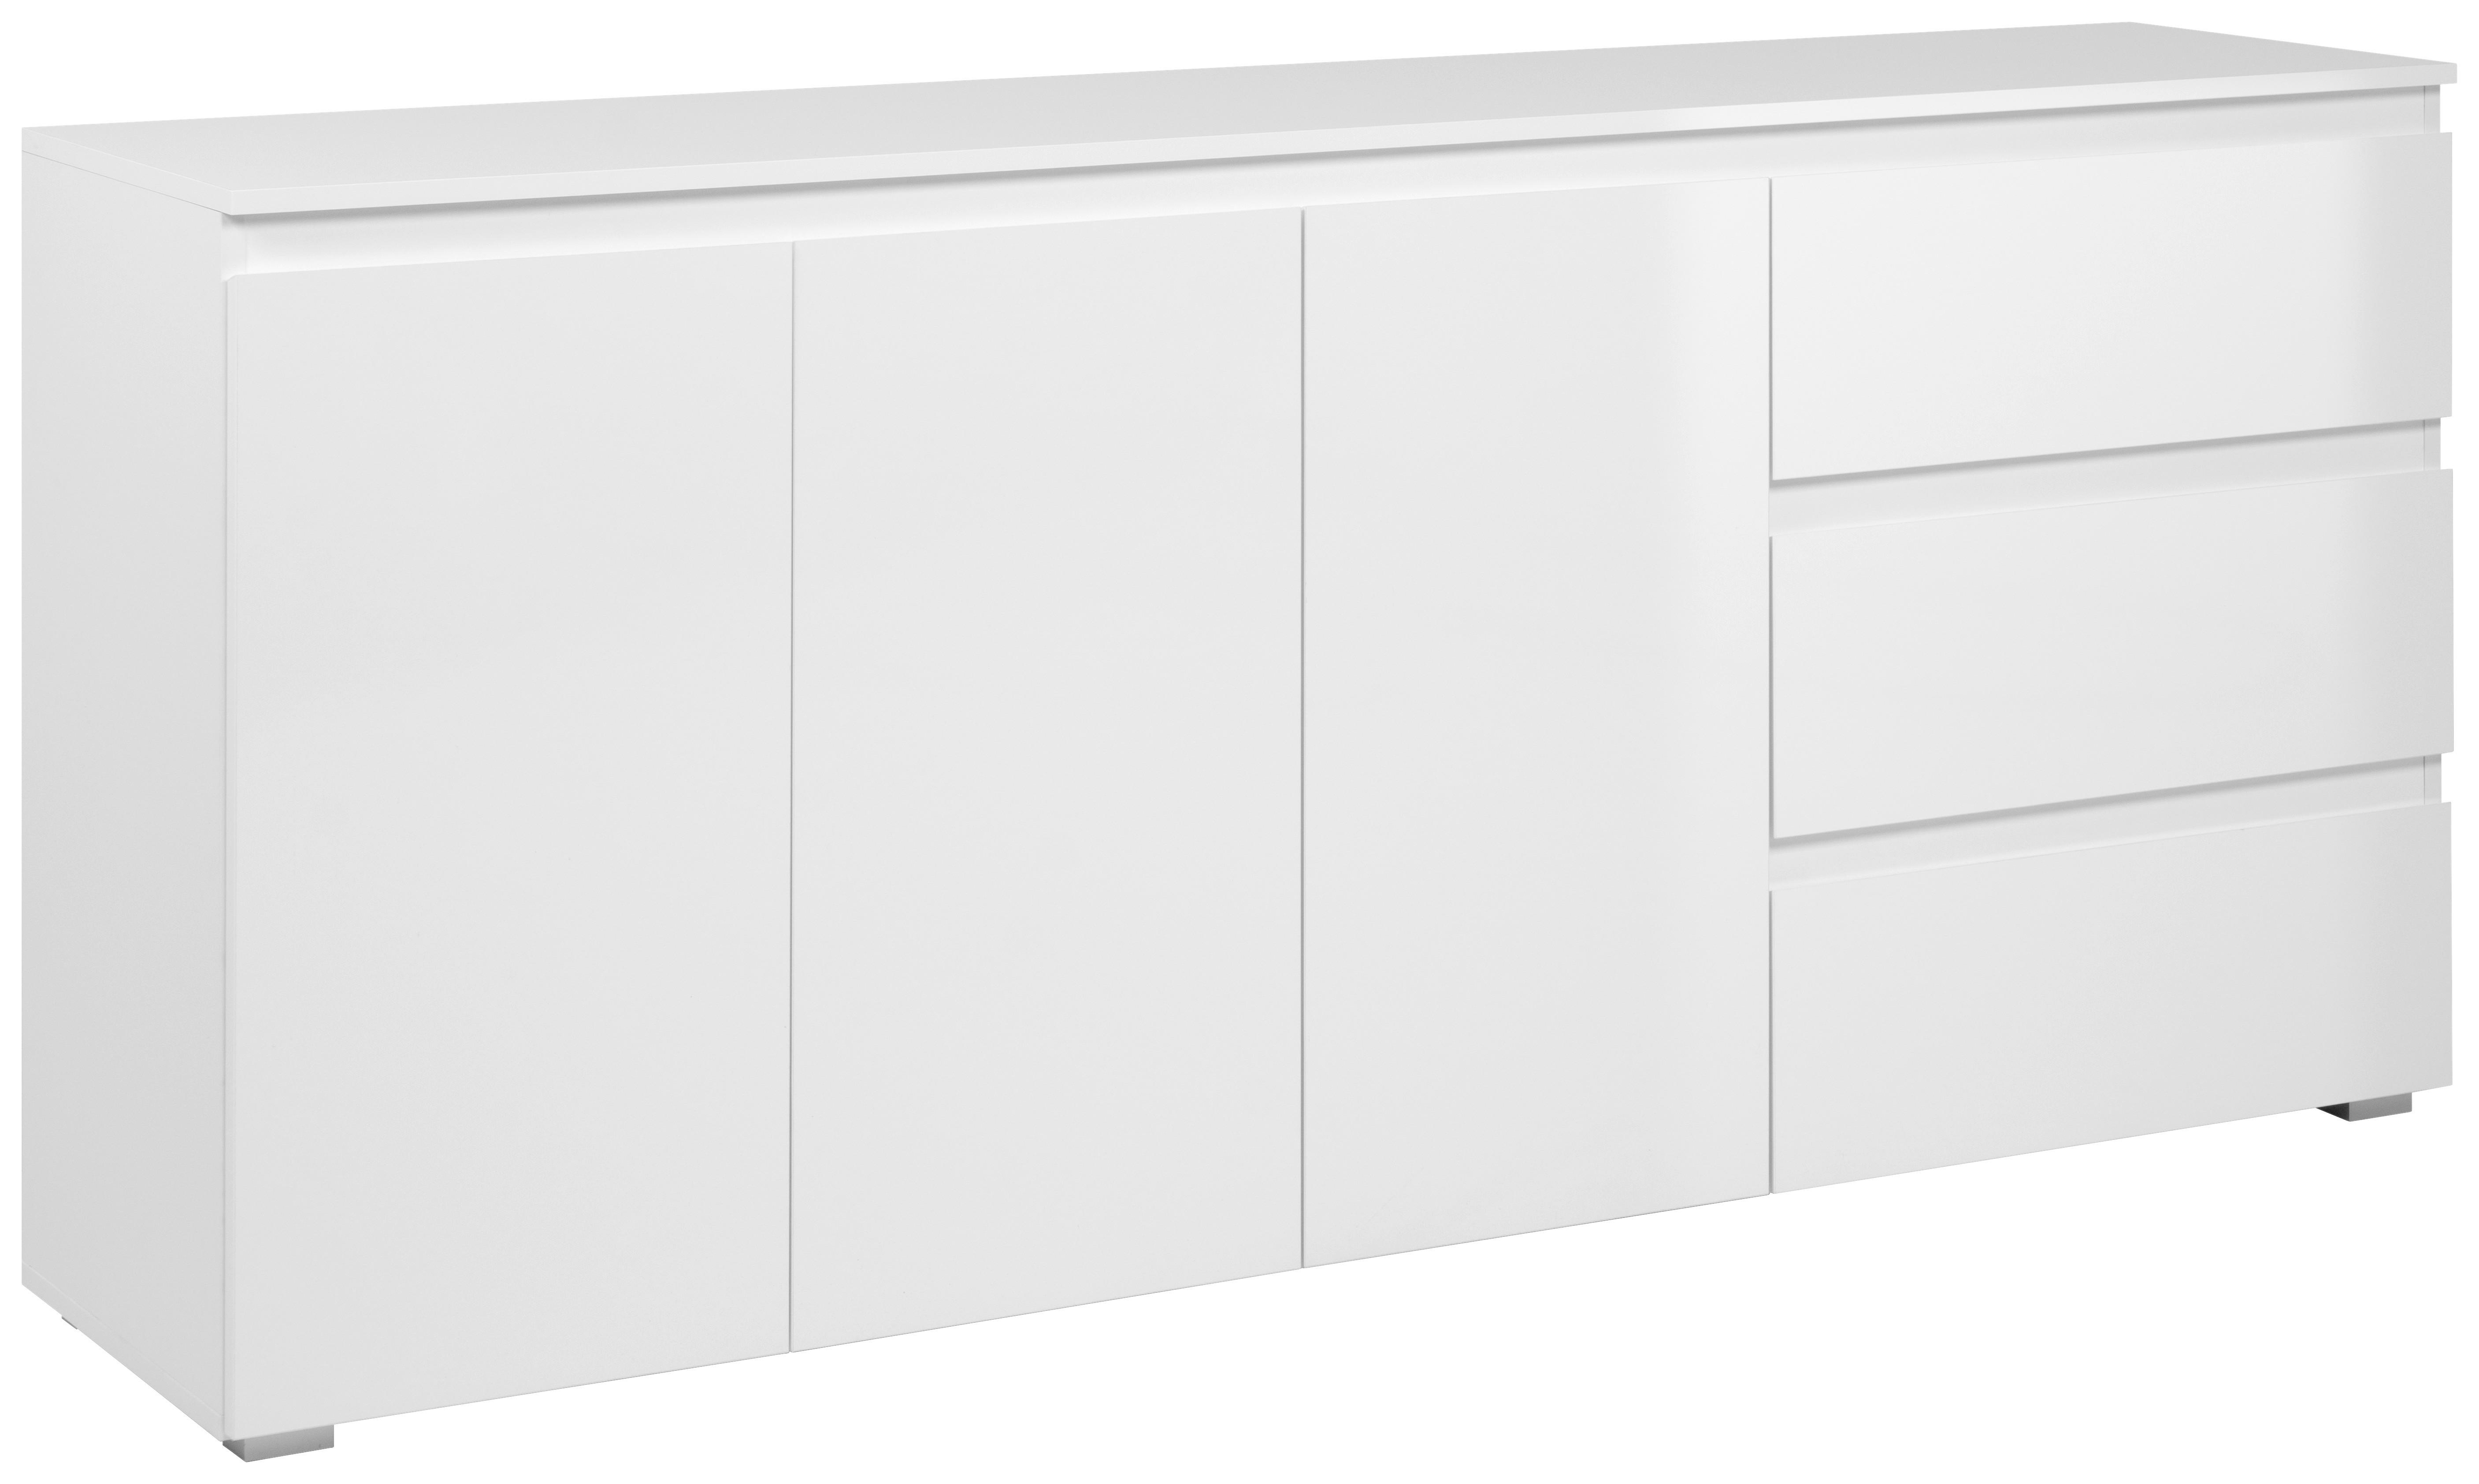 Sideboard Captown weiß weiß glänzend B/H/T: ca. 179x81x40 cm Captown - weiß (179,00/81,00/40,00cm)